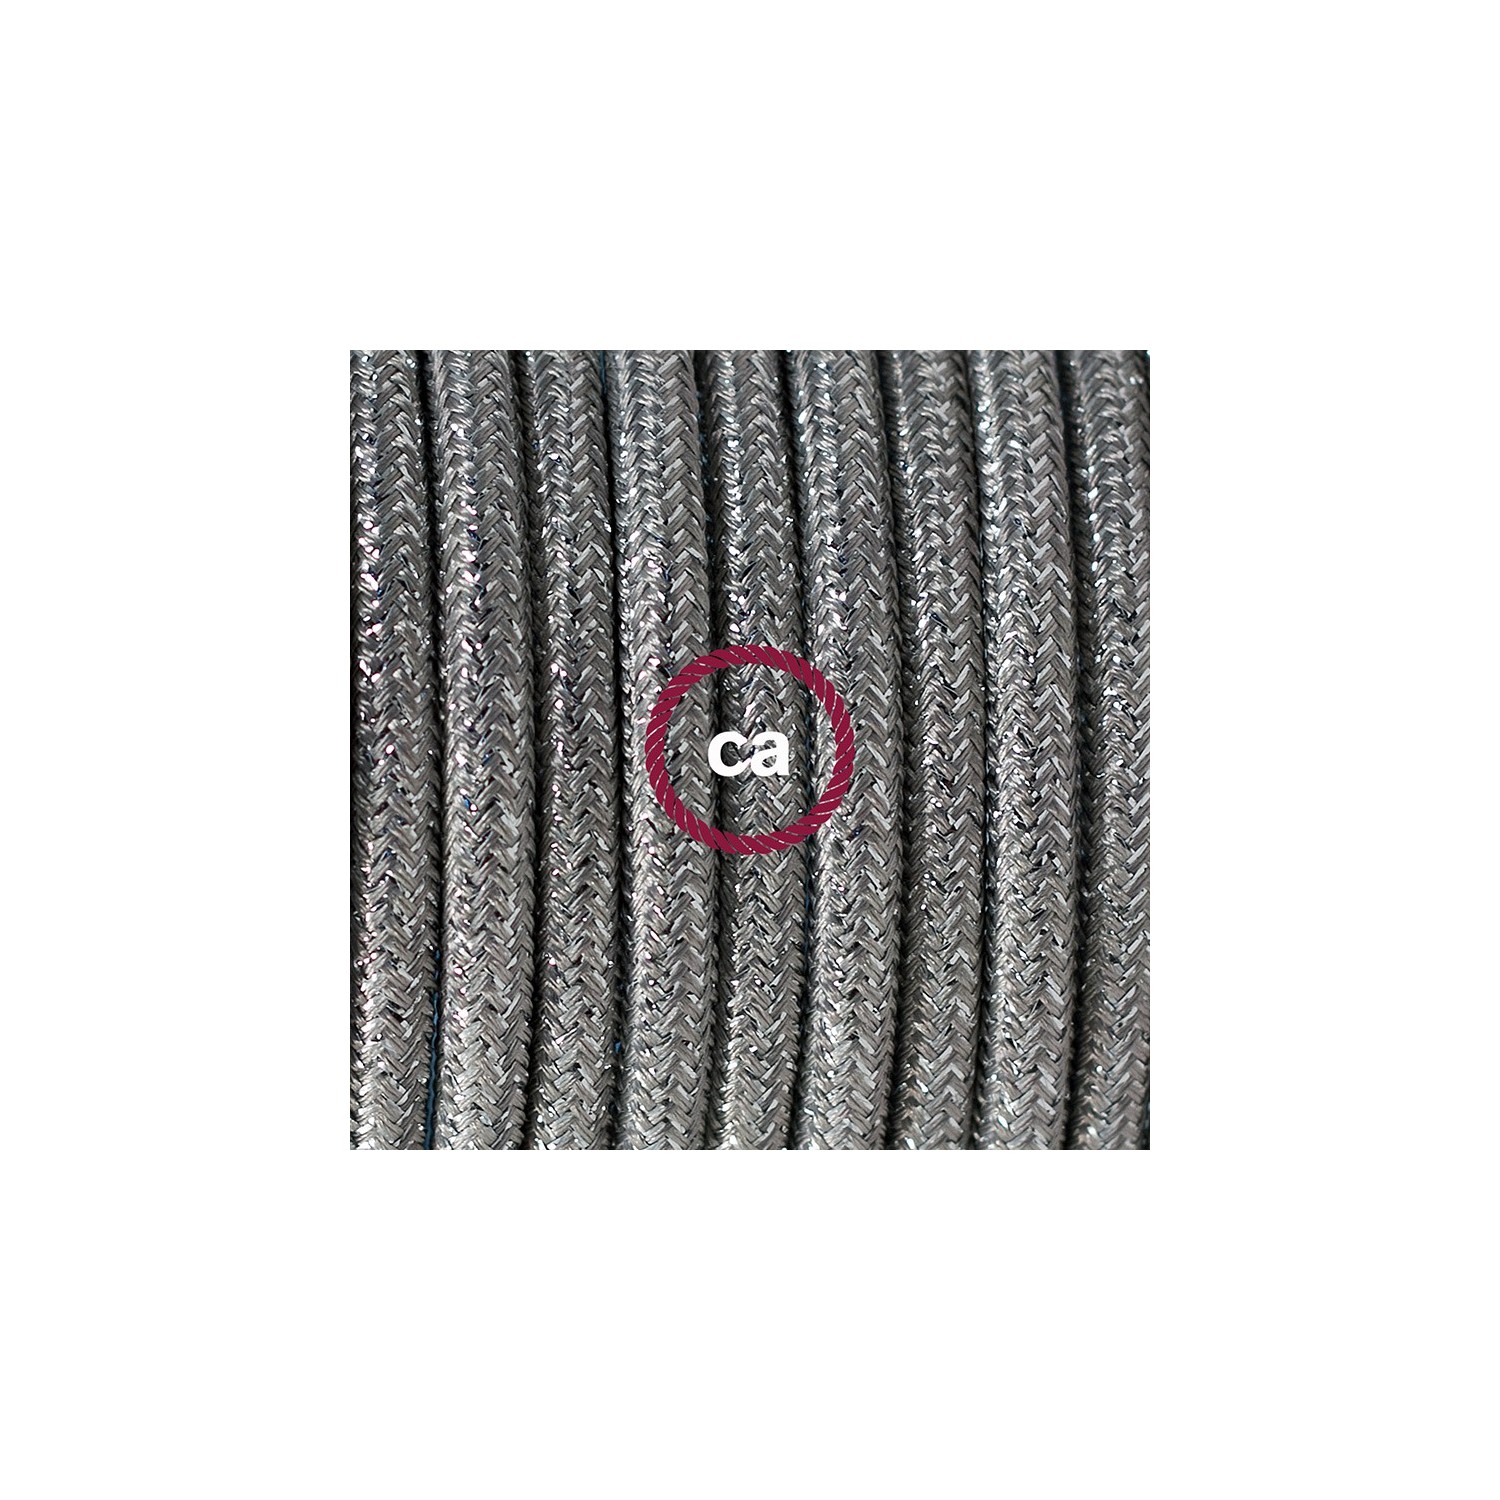 Ronde flexibele textielkabel van viscose met schakelaar en stekker. RL02 - lame (glinsterend) zilver 1,80 m.